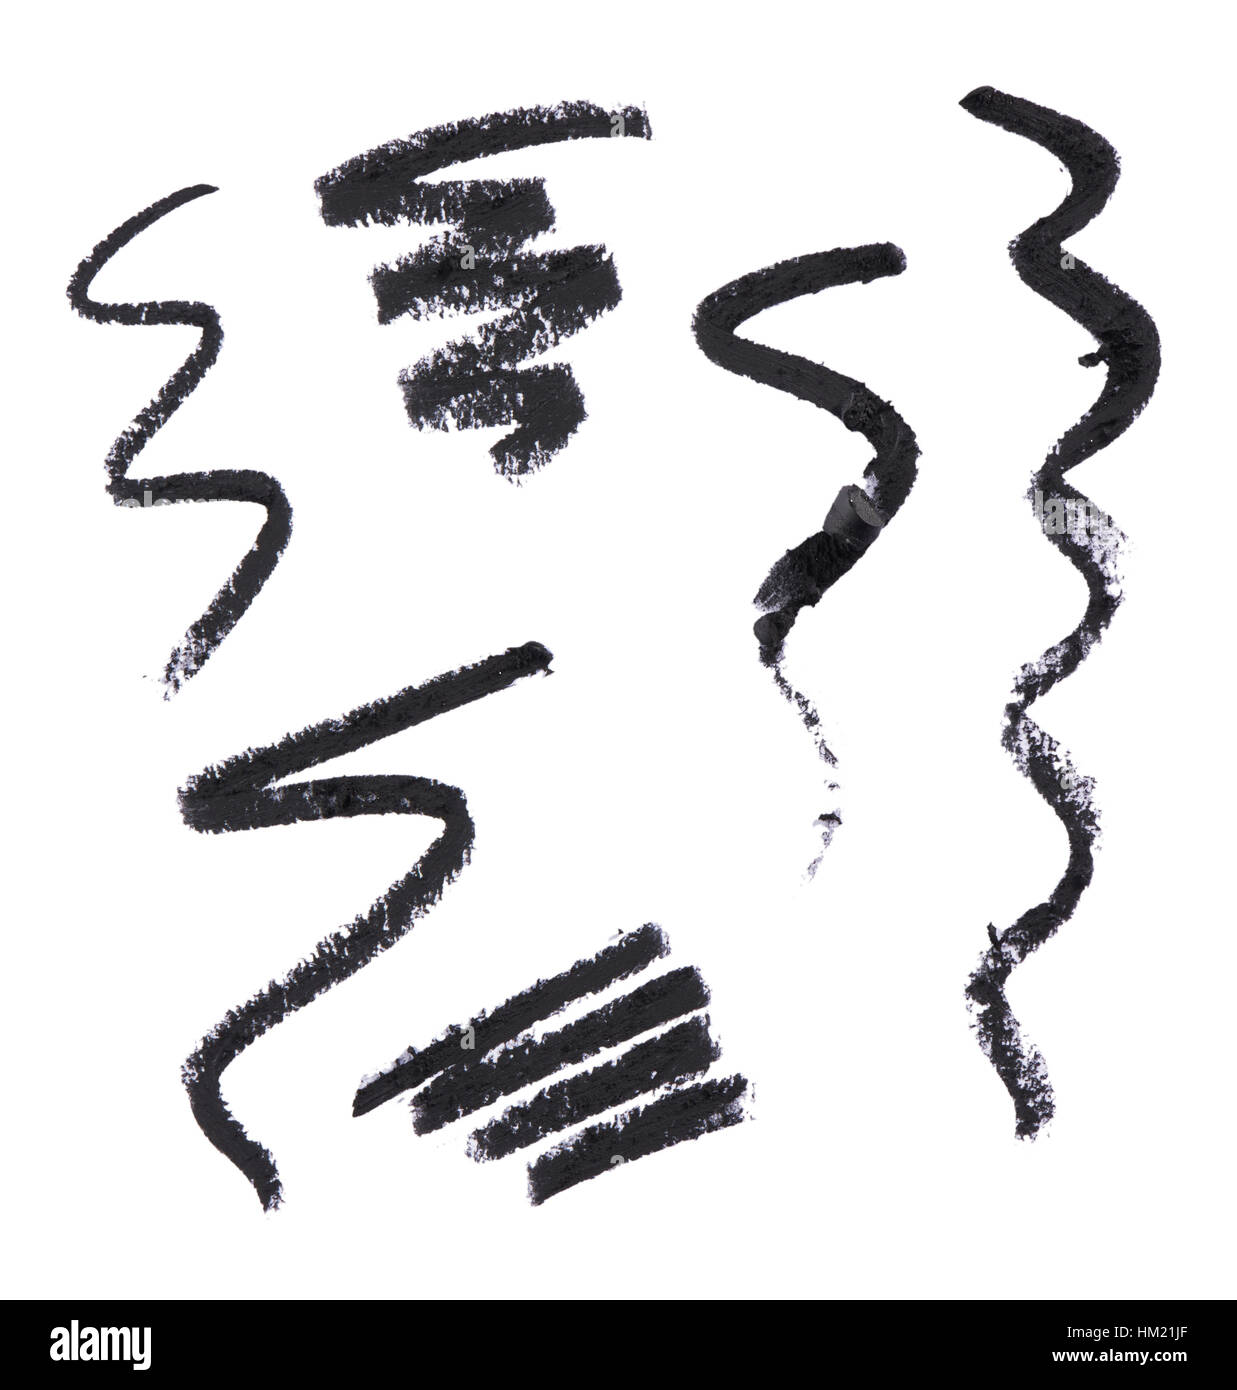 Eine Auswahl an Ausschneiden Schönheit Bilder von schwarzen Make-up oder Eyeliner Bleistift Proben. Stockfoto